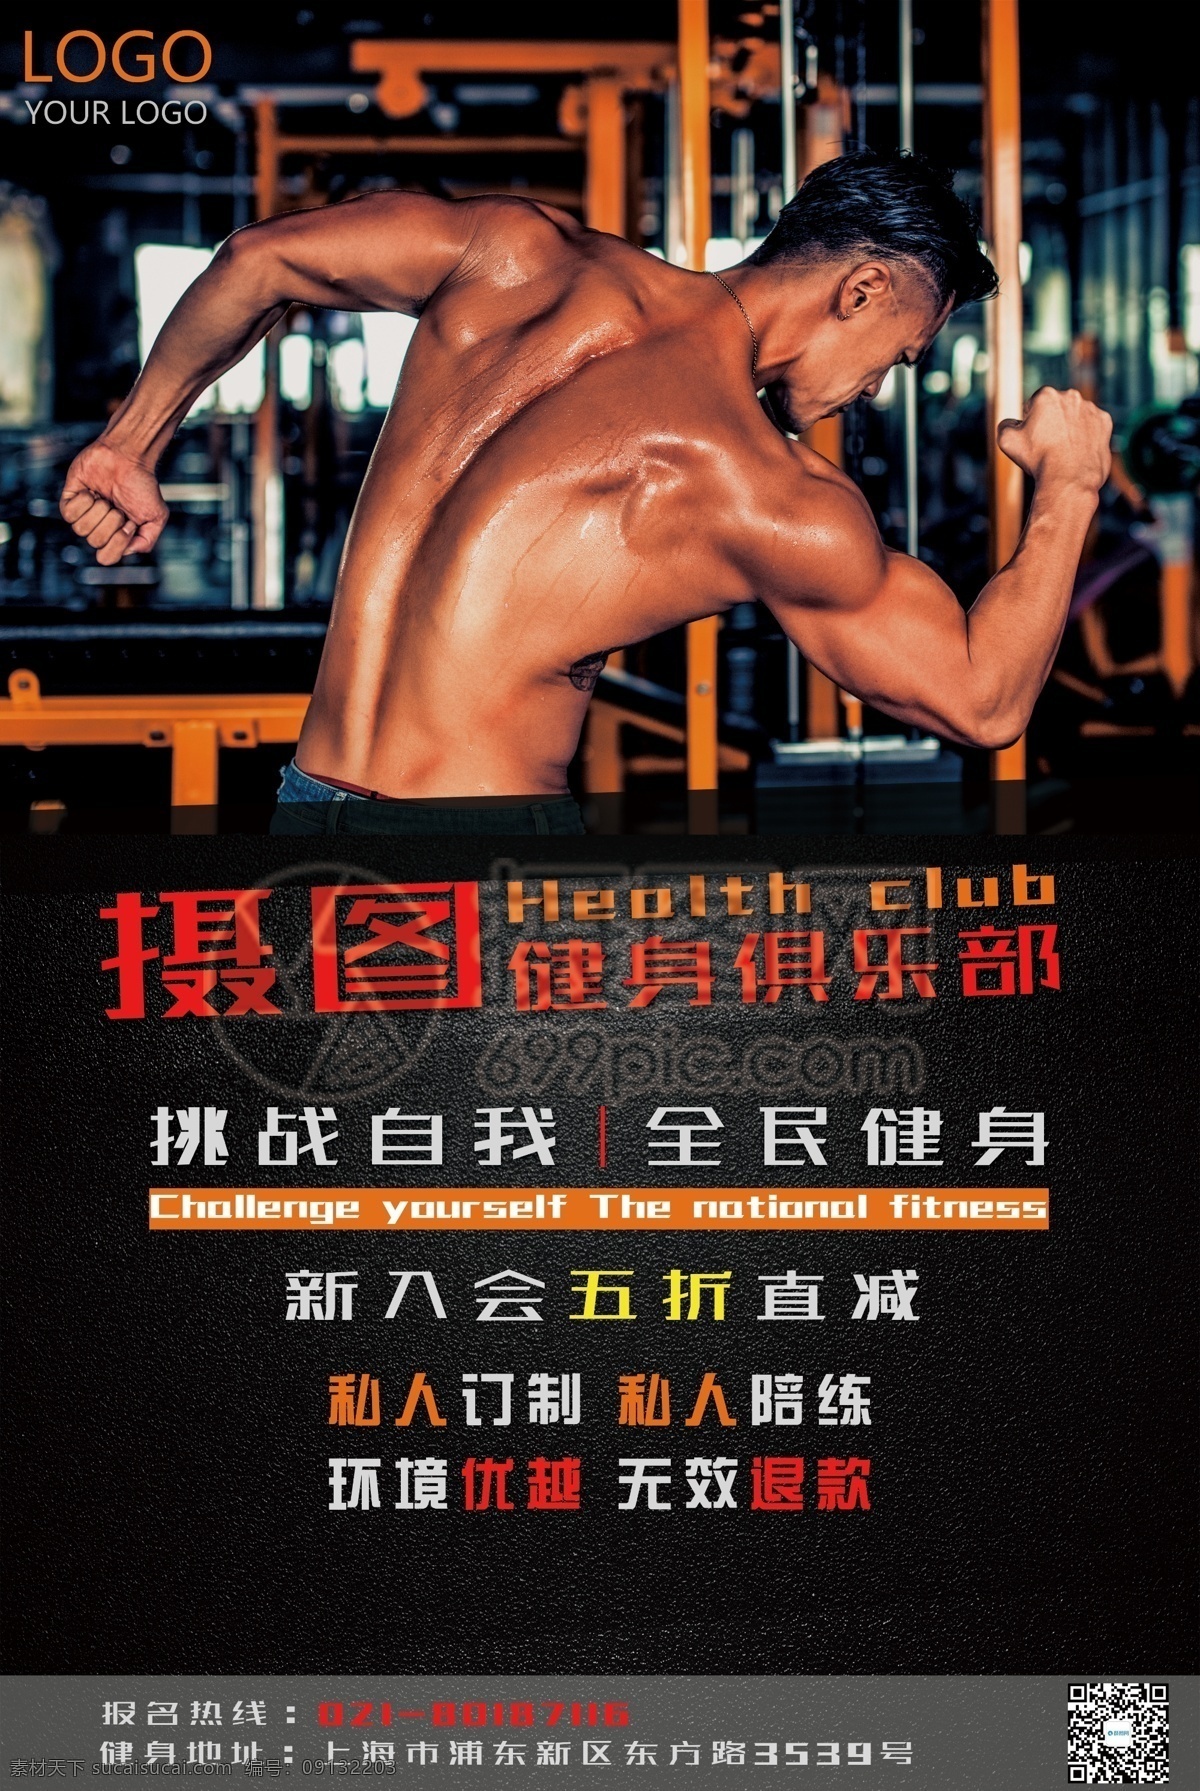 运动 健身 俱乐部 海报 体魄 器械 体育 力量 肌肉 私教 教练 健身房 健身俱乐部 生命在于运动 猛男训练 健身运动海报